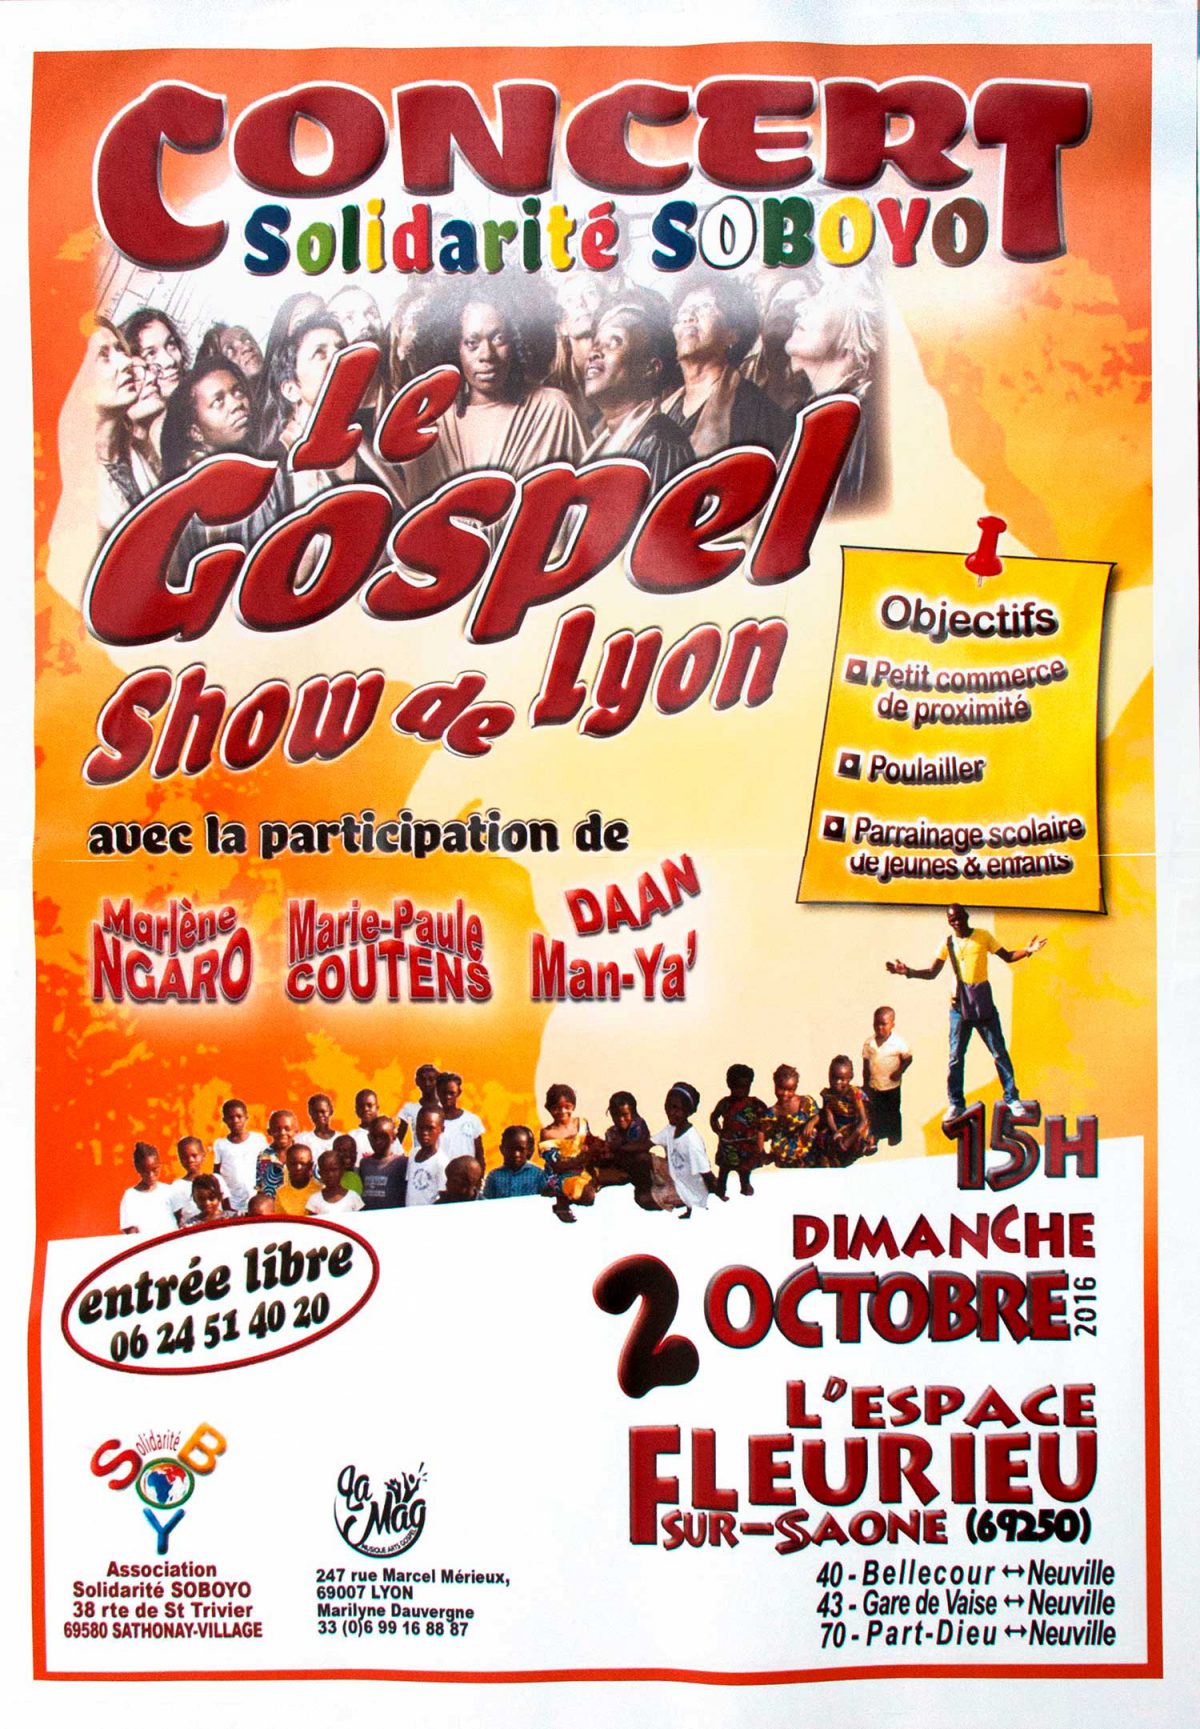 Affiche du "Gospel show de Lyon" 2016